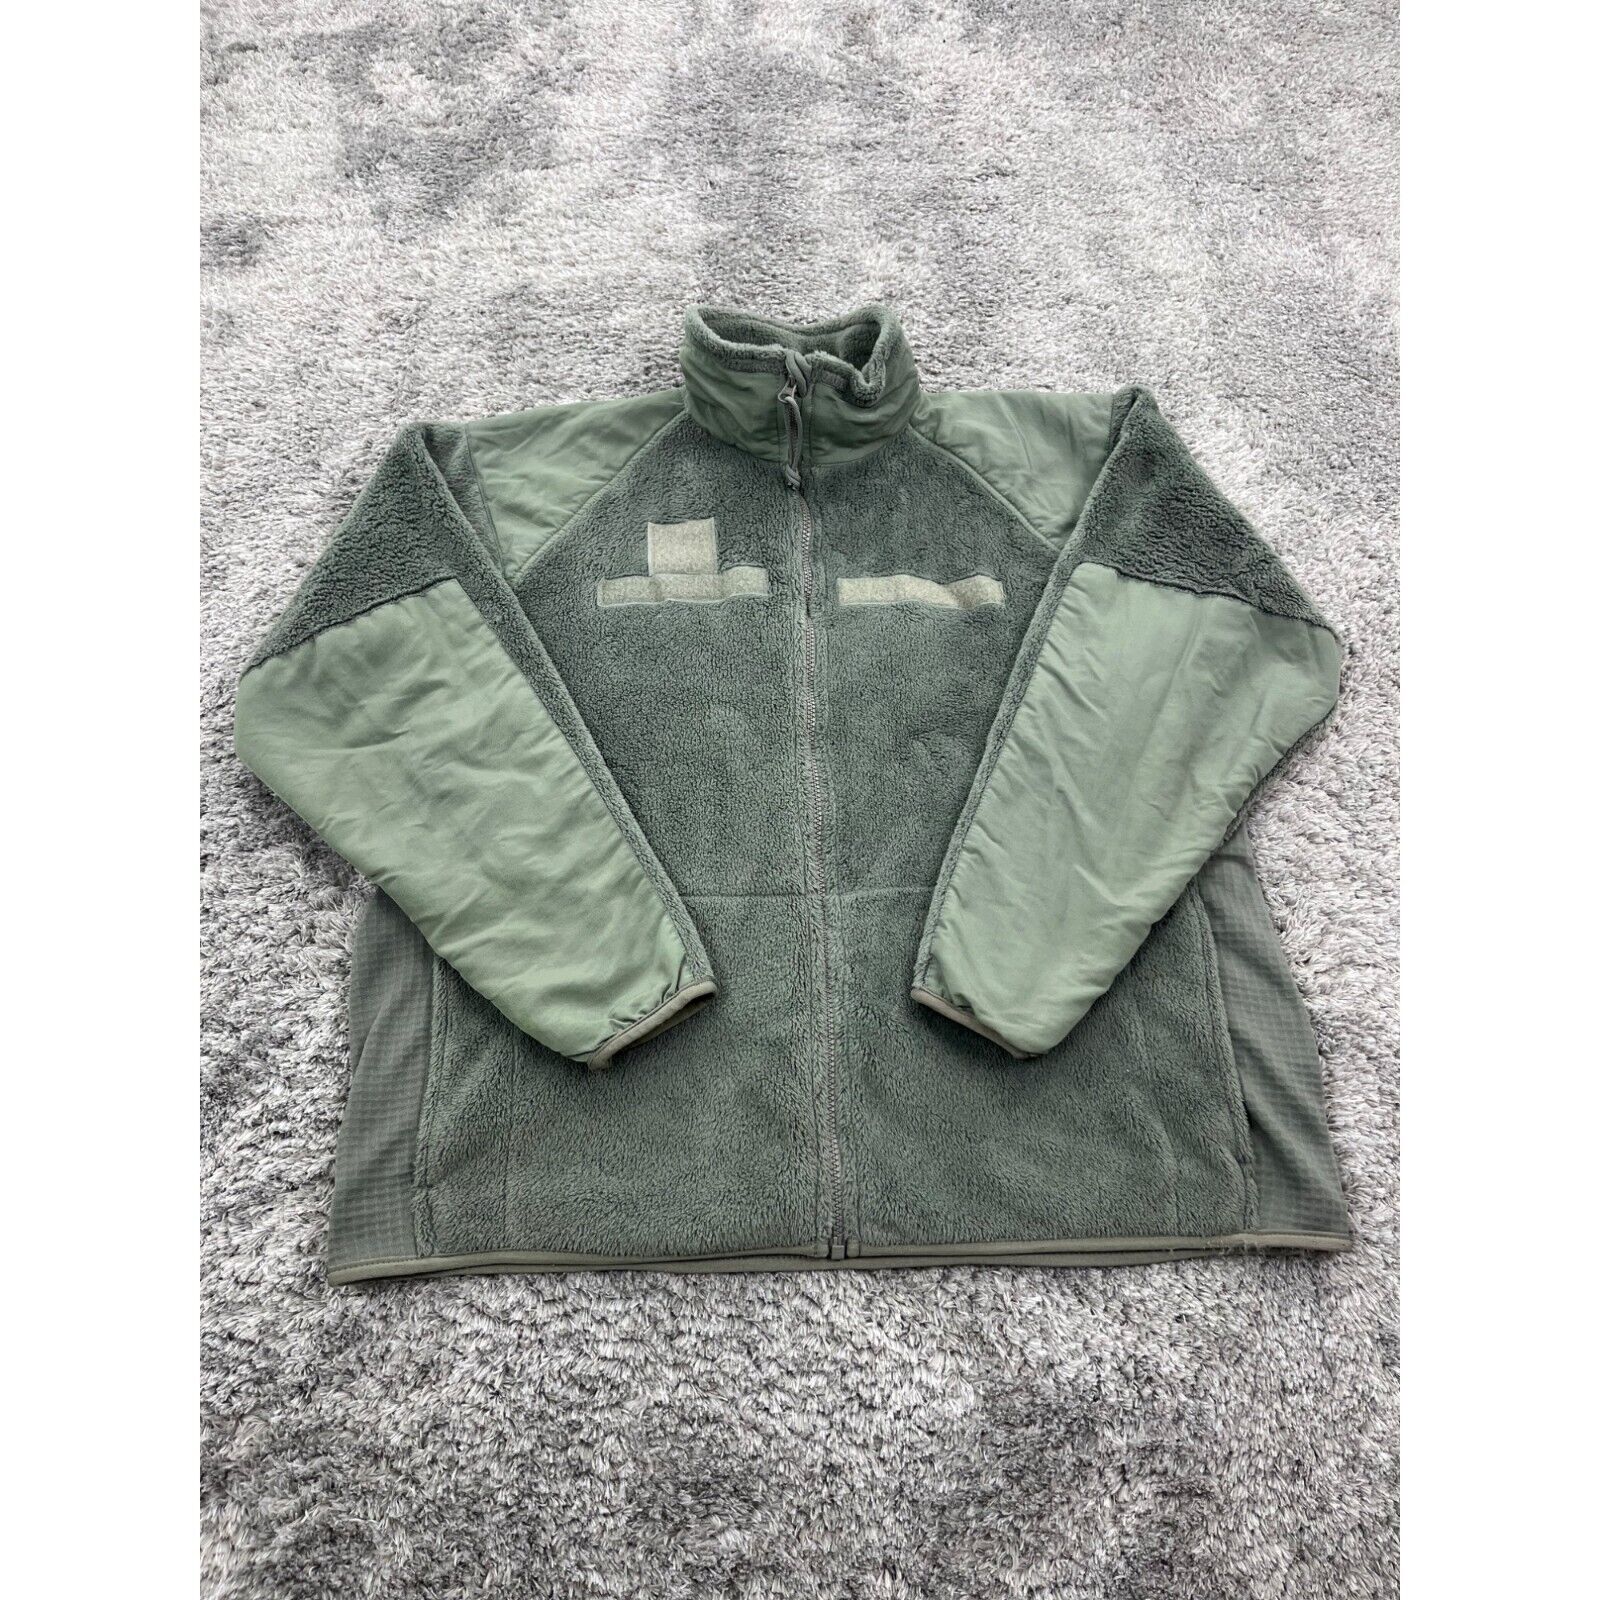 USGI Cold Weather Jacket Mens Medium Green Fleece Gen III Polartec Full Zip Coat